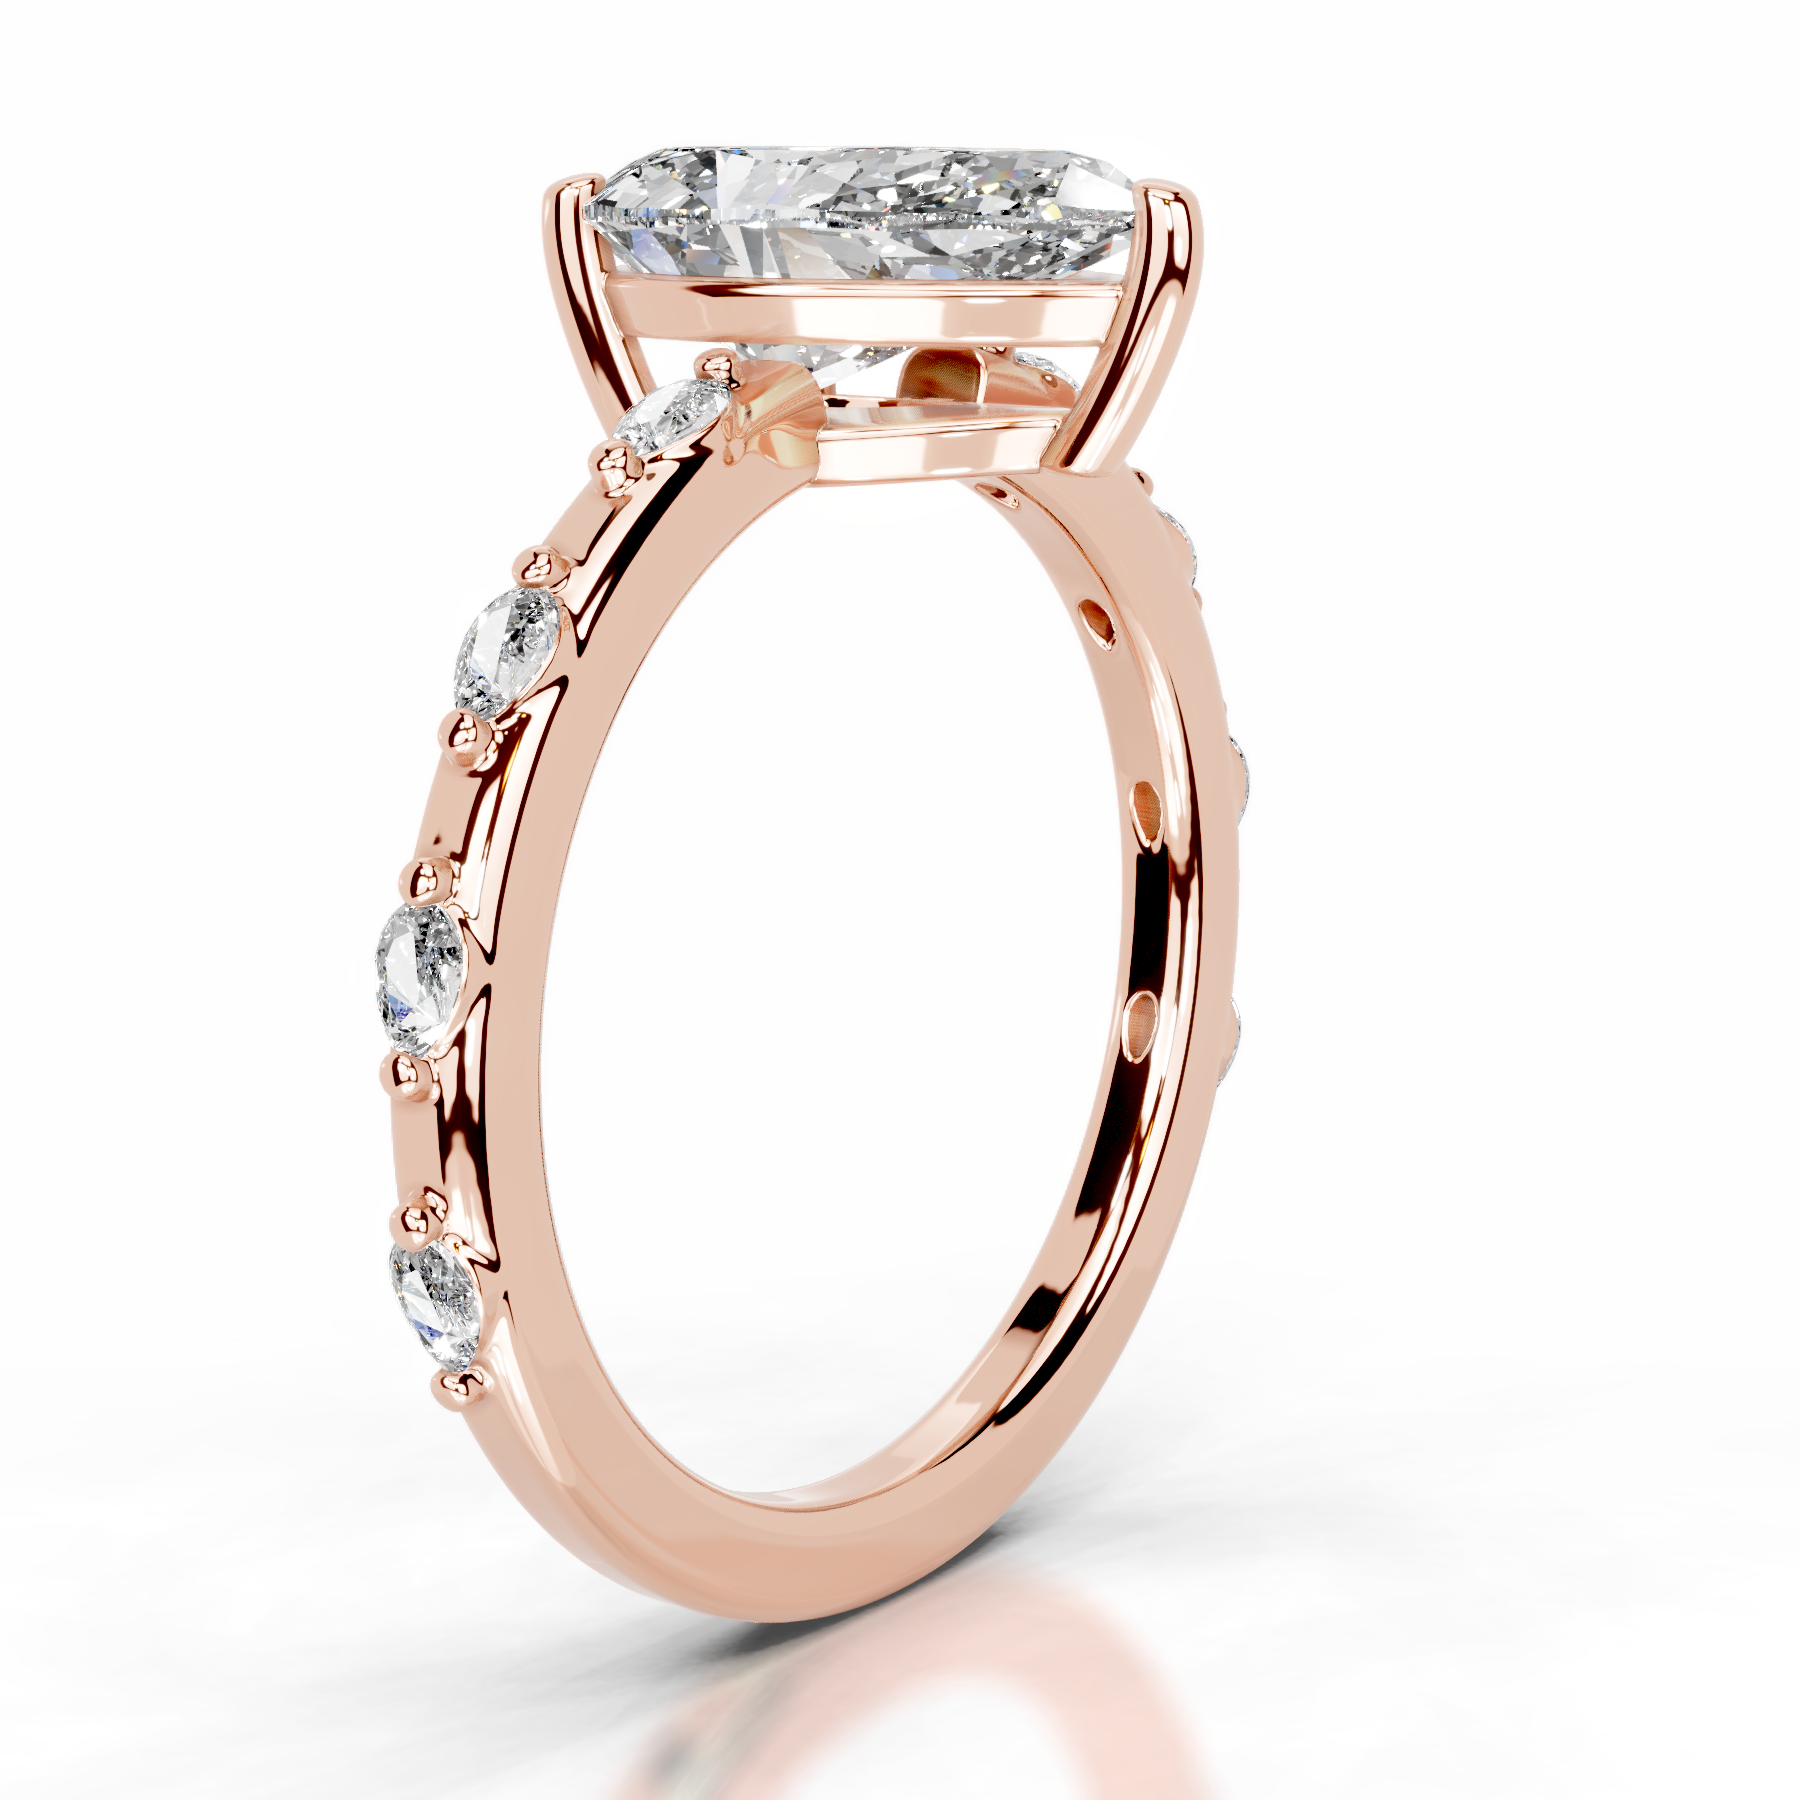 Nadya Lab Grown Diamond Ring   (2.2 Carat) -14K Rose Gold